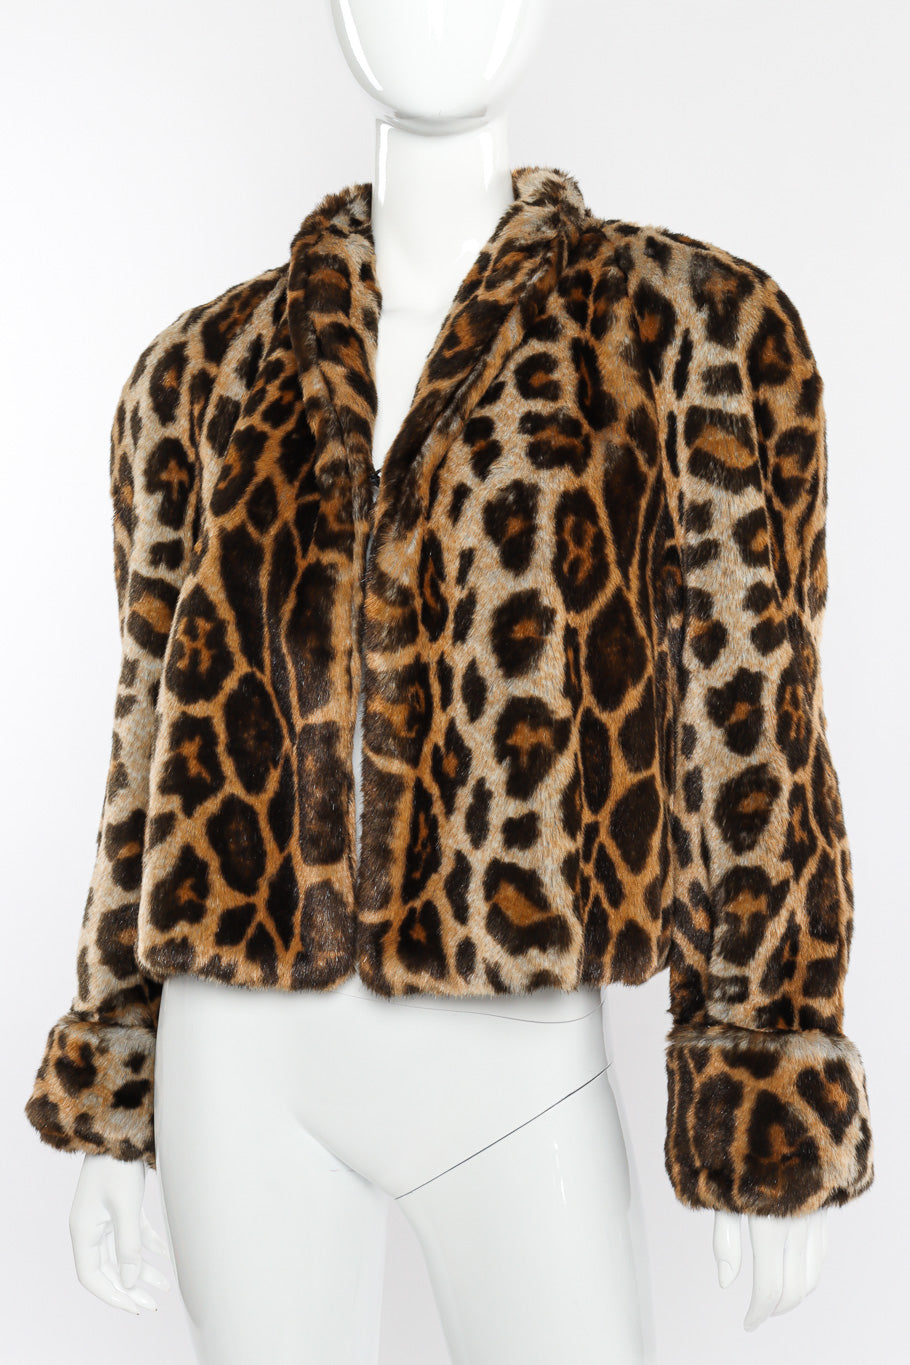 Vintage Mondi Leopard Print Faux Fur Jacket front view on mannequin closeup @recessla